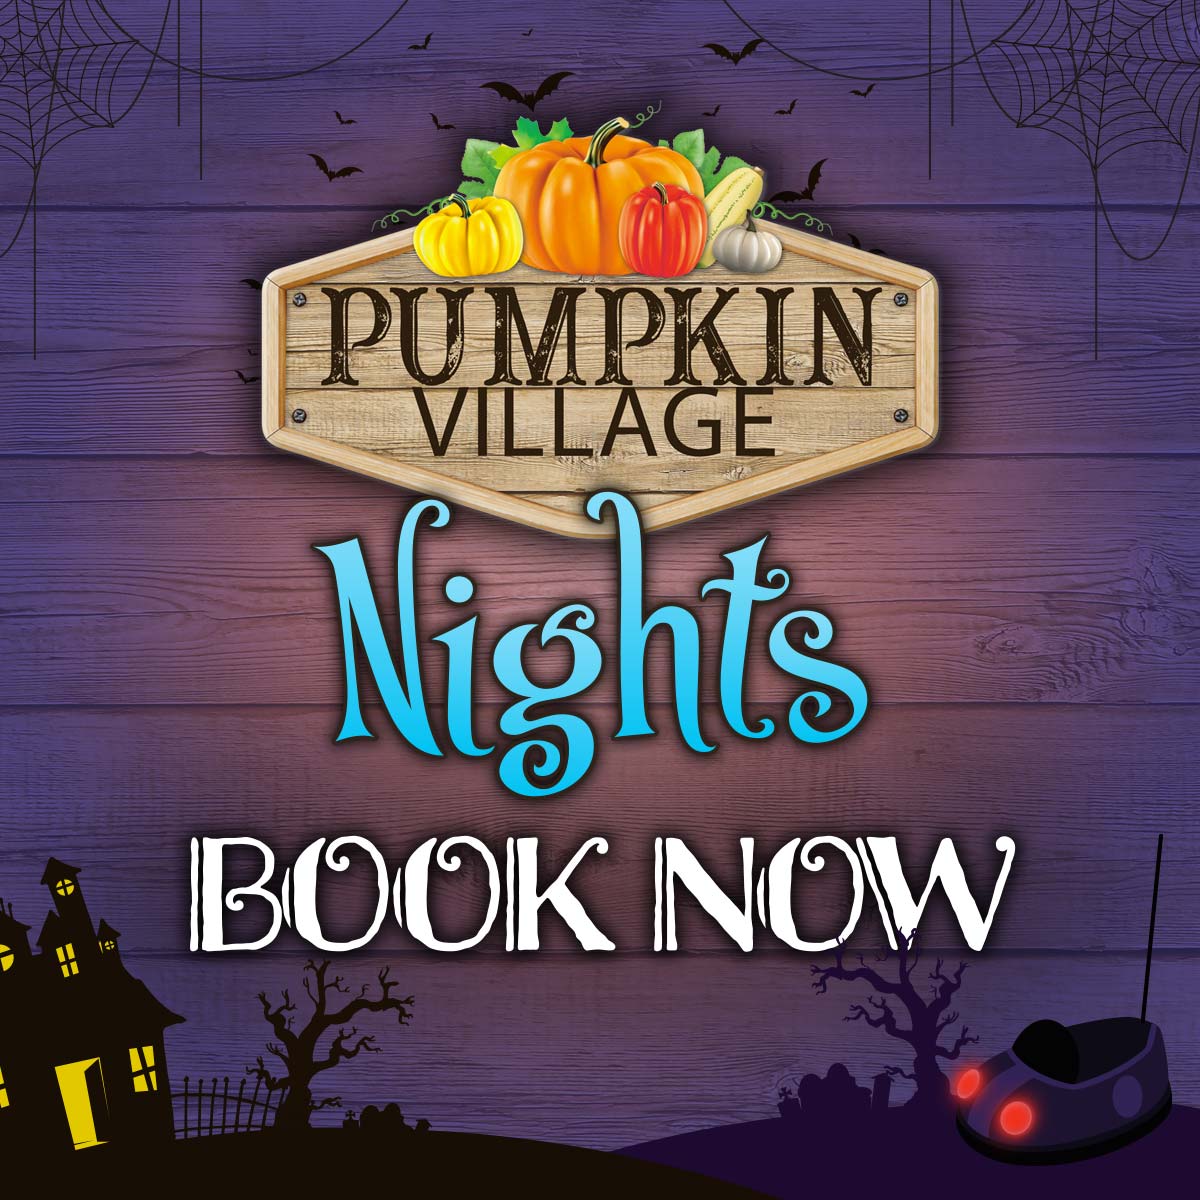 Pumpkin Village Nights - Book Now